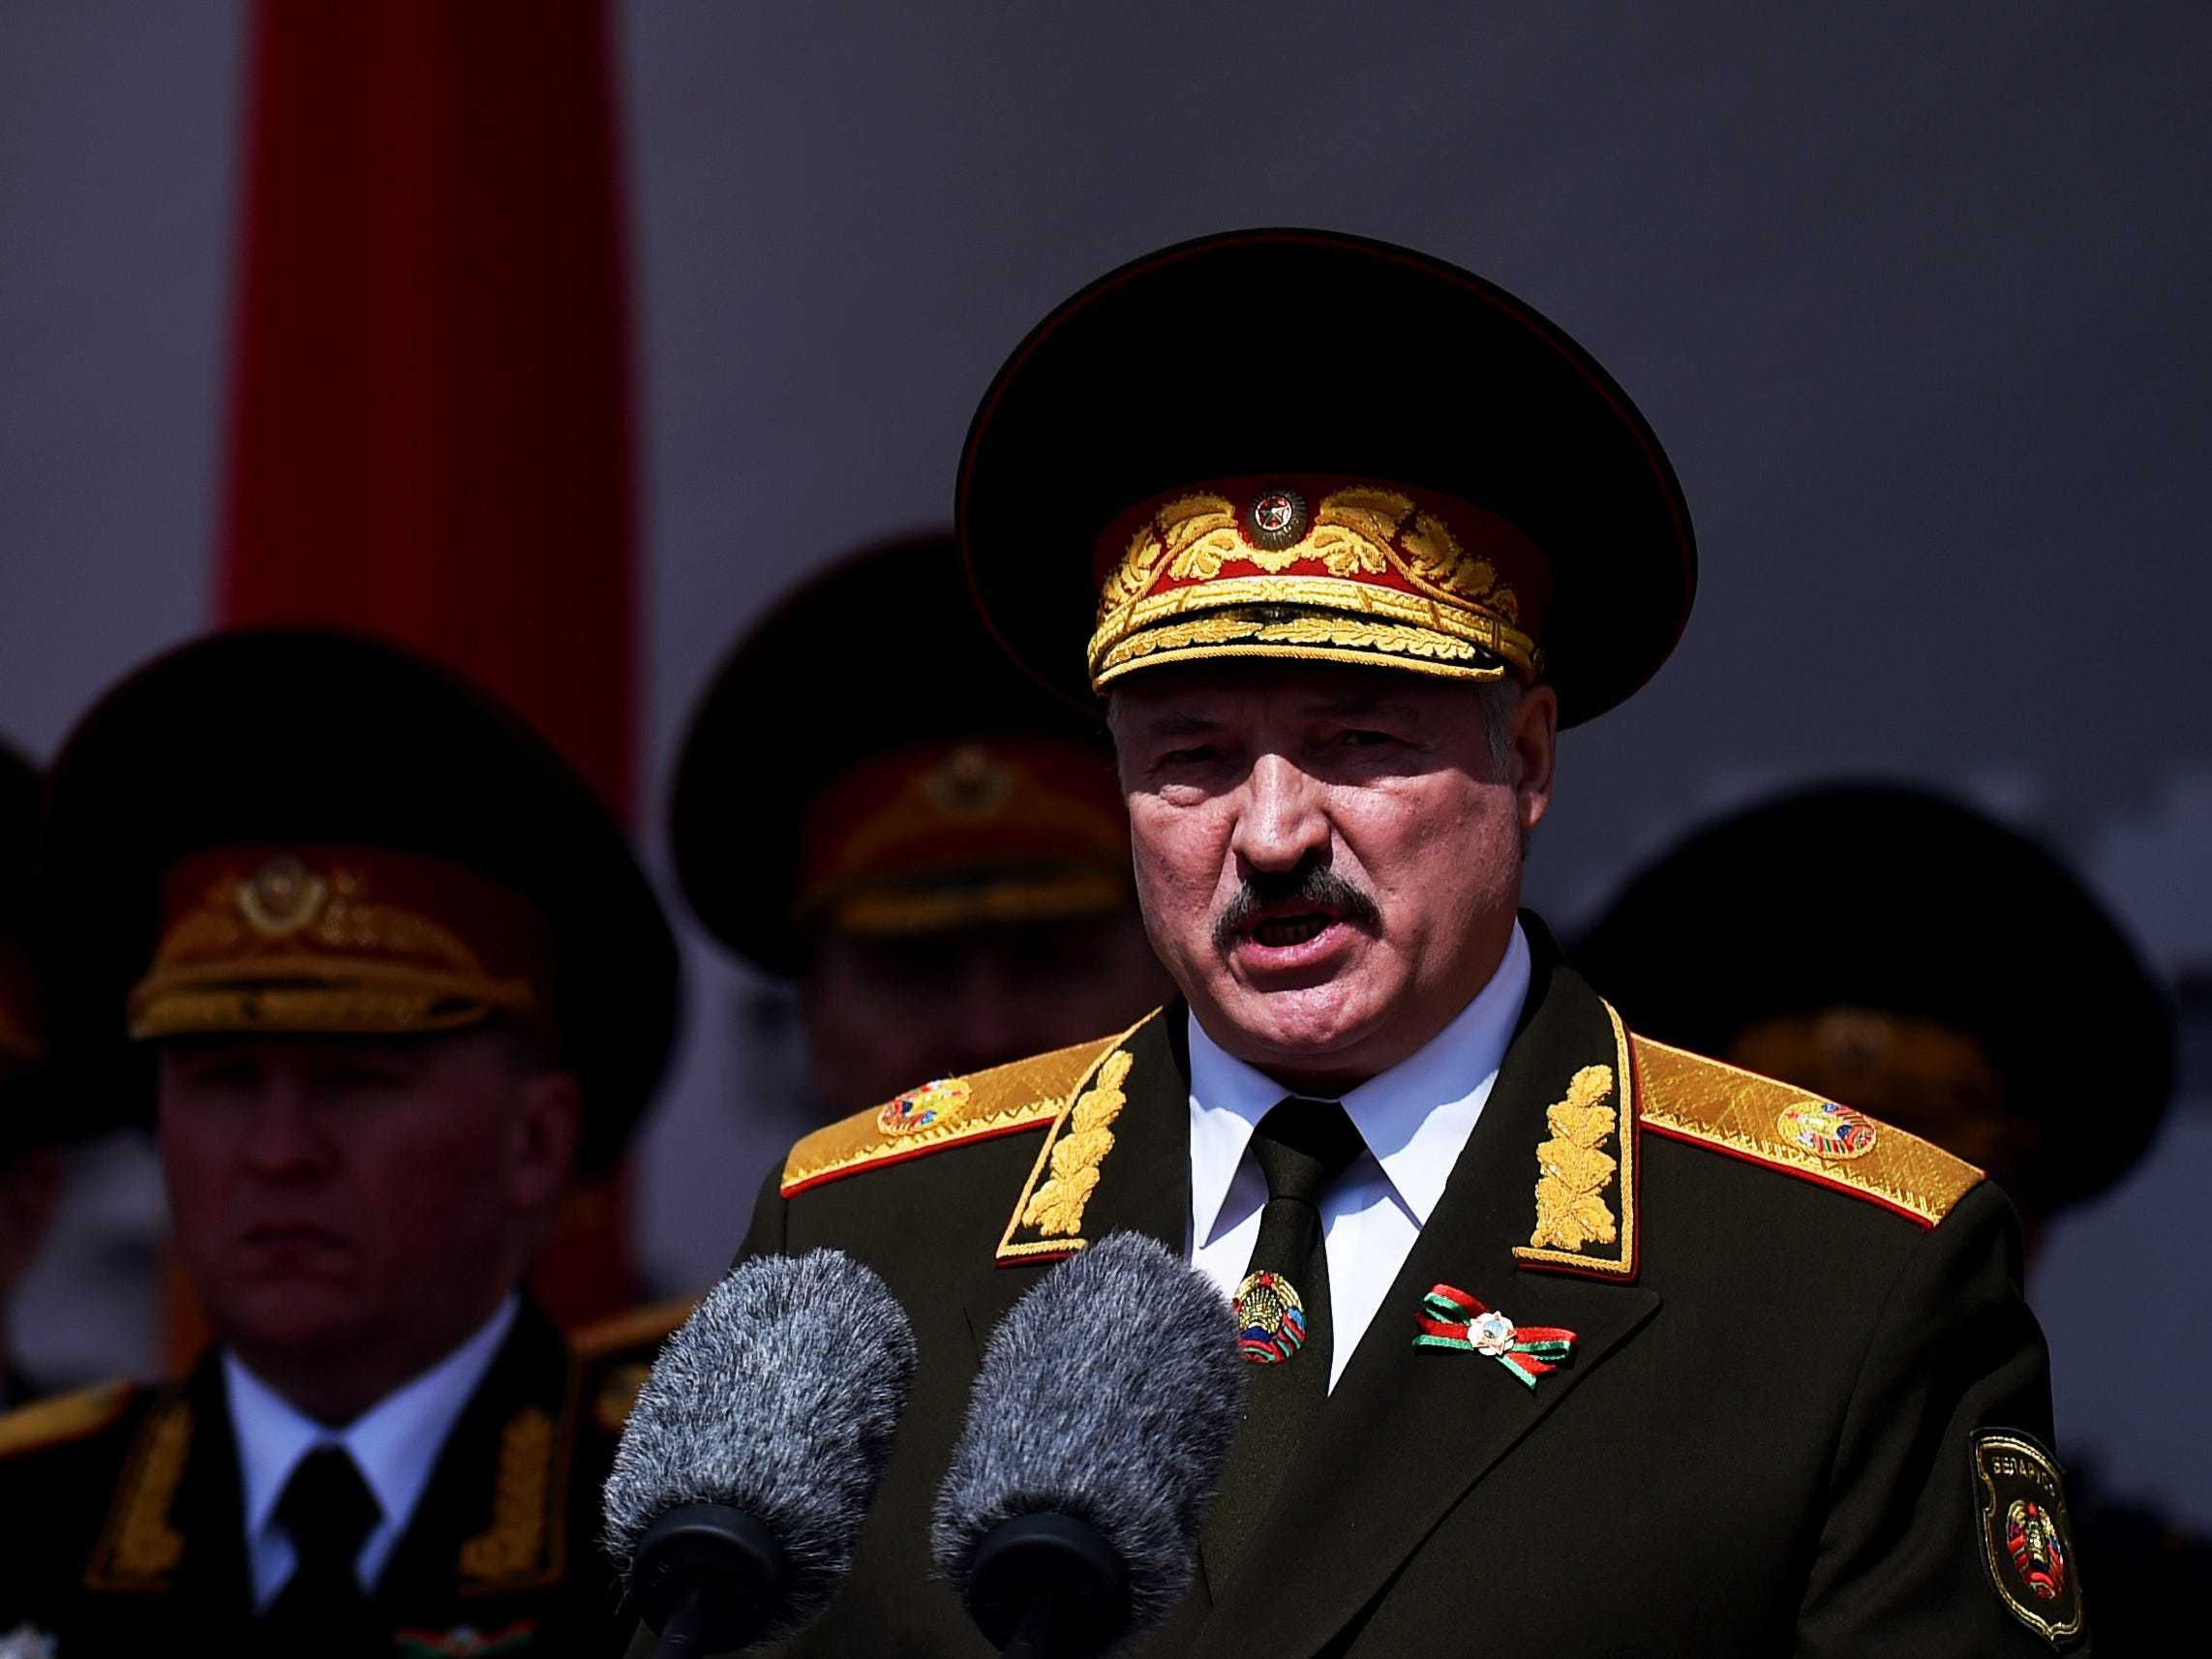 Alexander Lukashenko marks 30 years in power as leader of Belarus